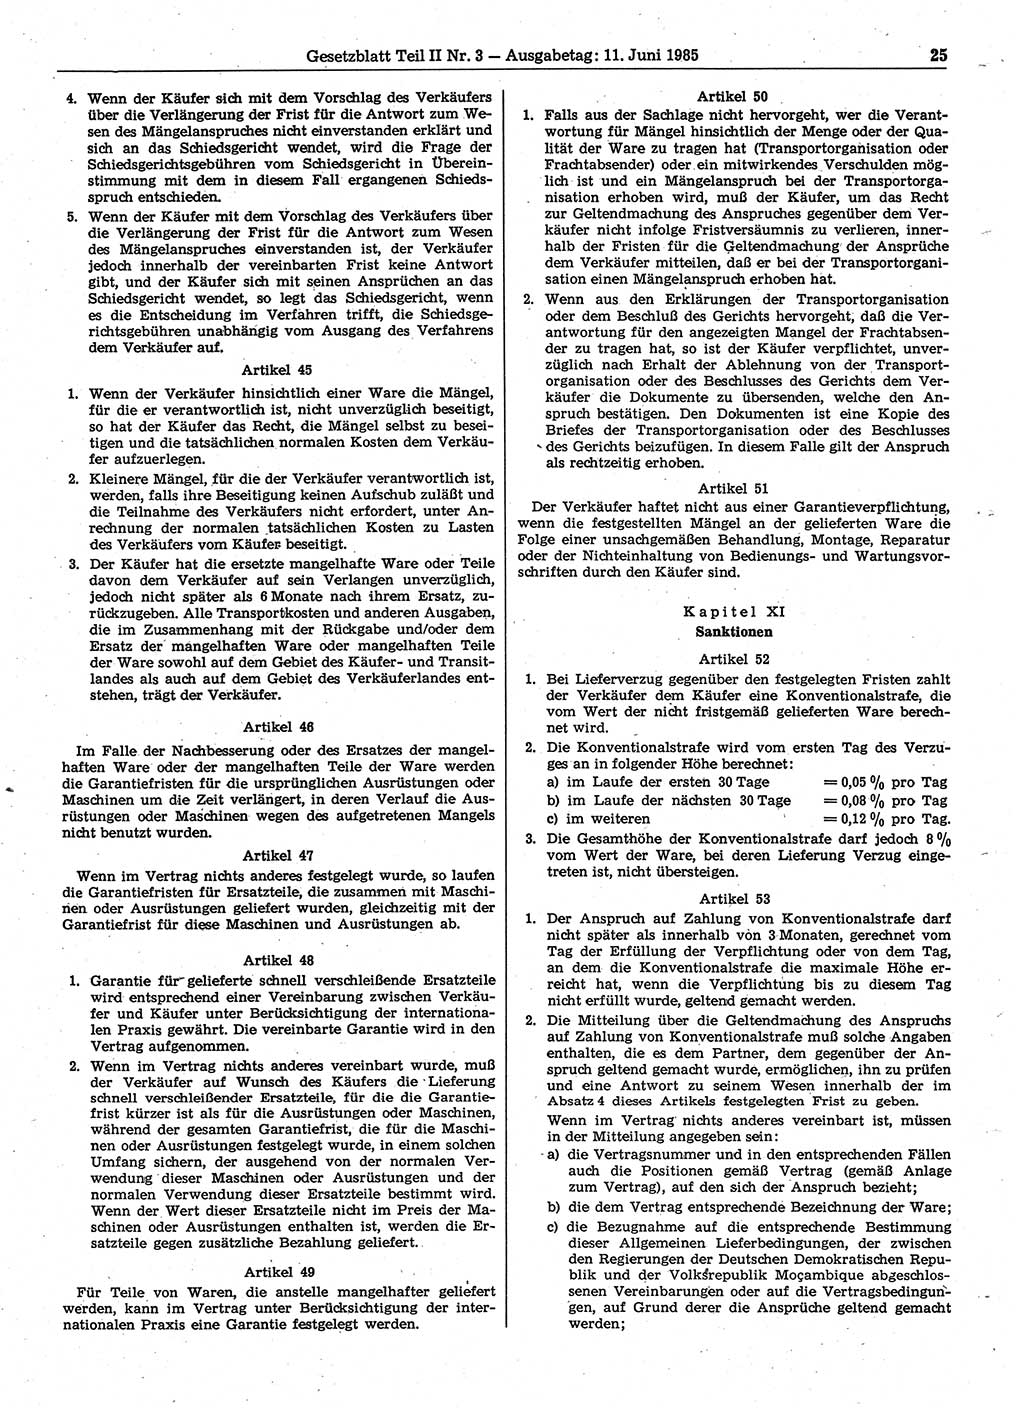 Gesetzblatt (GBl.) der Deutschen Demokratischen Republik (DDR) Teil ⅠⅠ 1985, Seite 25 (GBl. DDR ⅠⅠ 1985, S. 25)